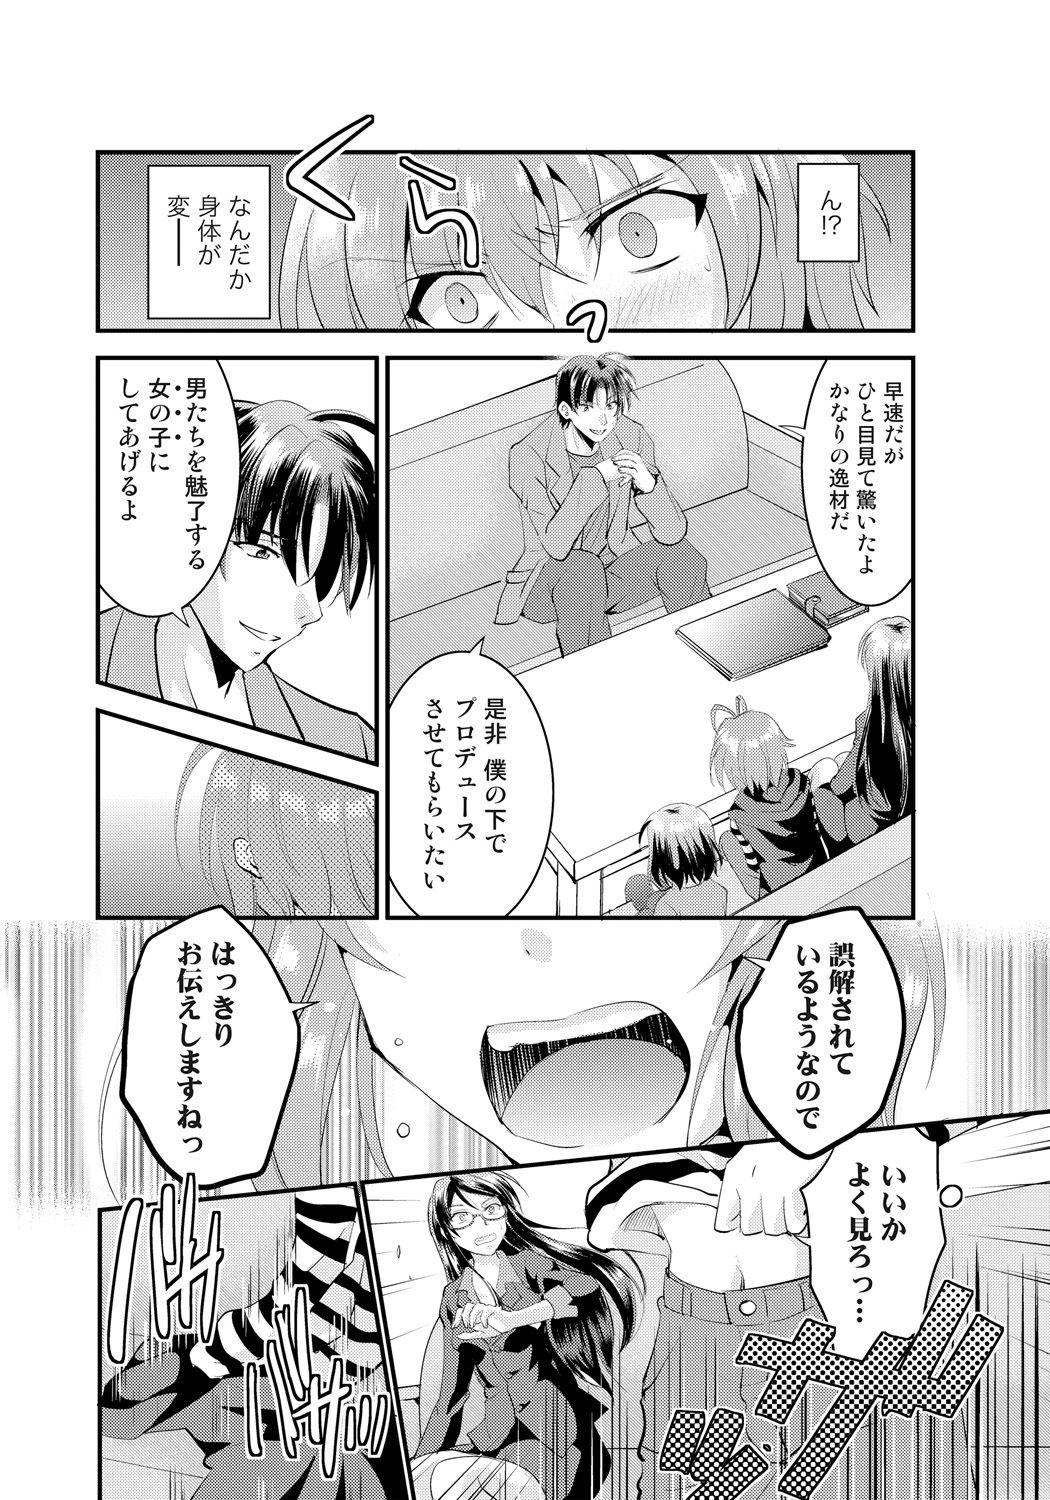 Culo Nyotaika Idol wa Yamerannai! Ch. 1 - Yuumei P to Icchau Idol! Small - Page 12